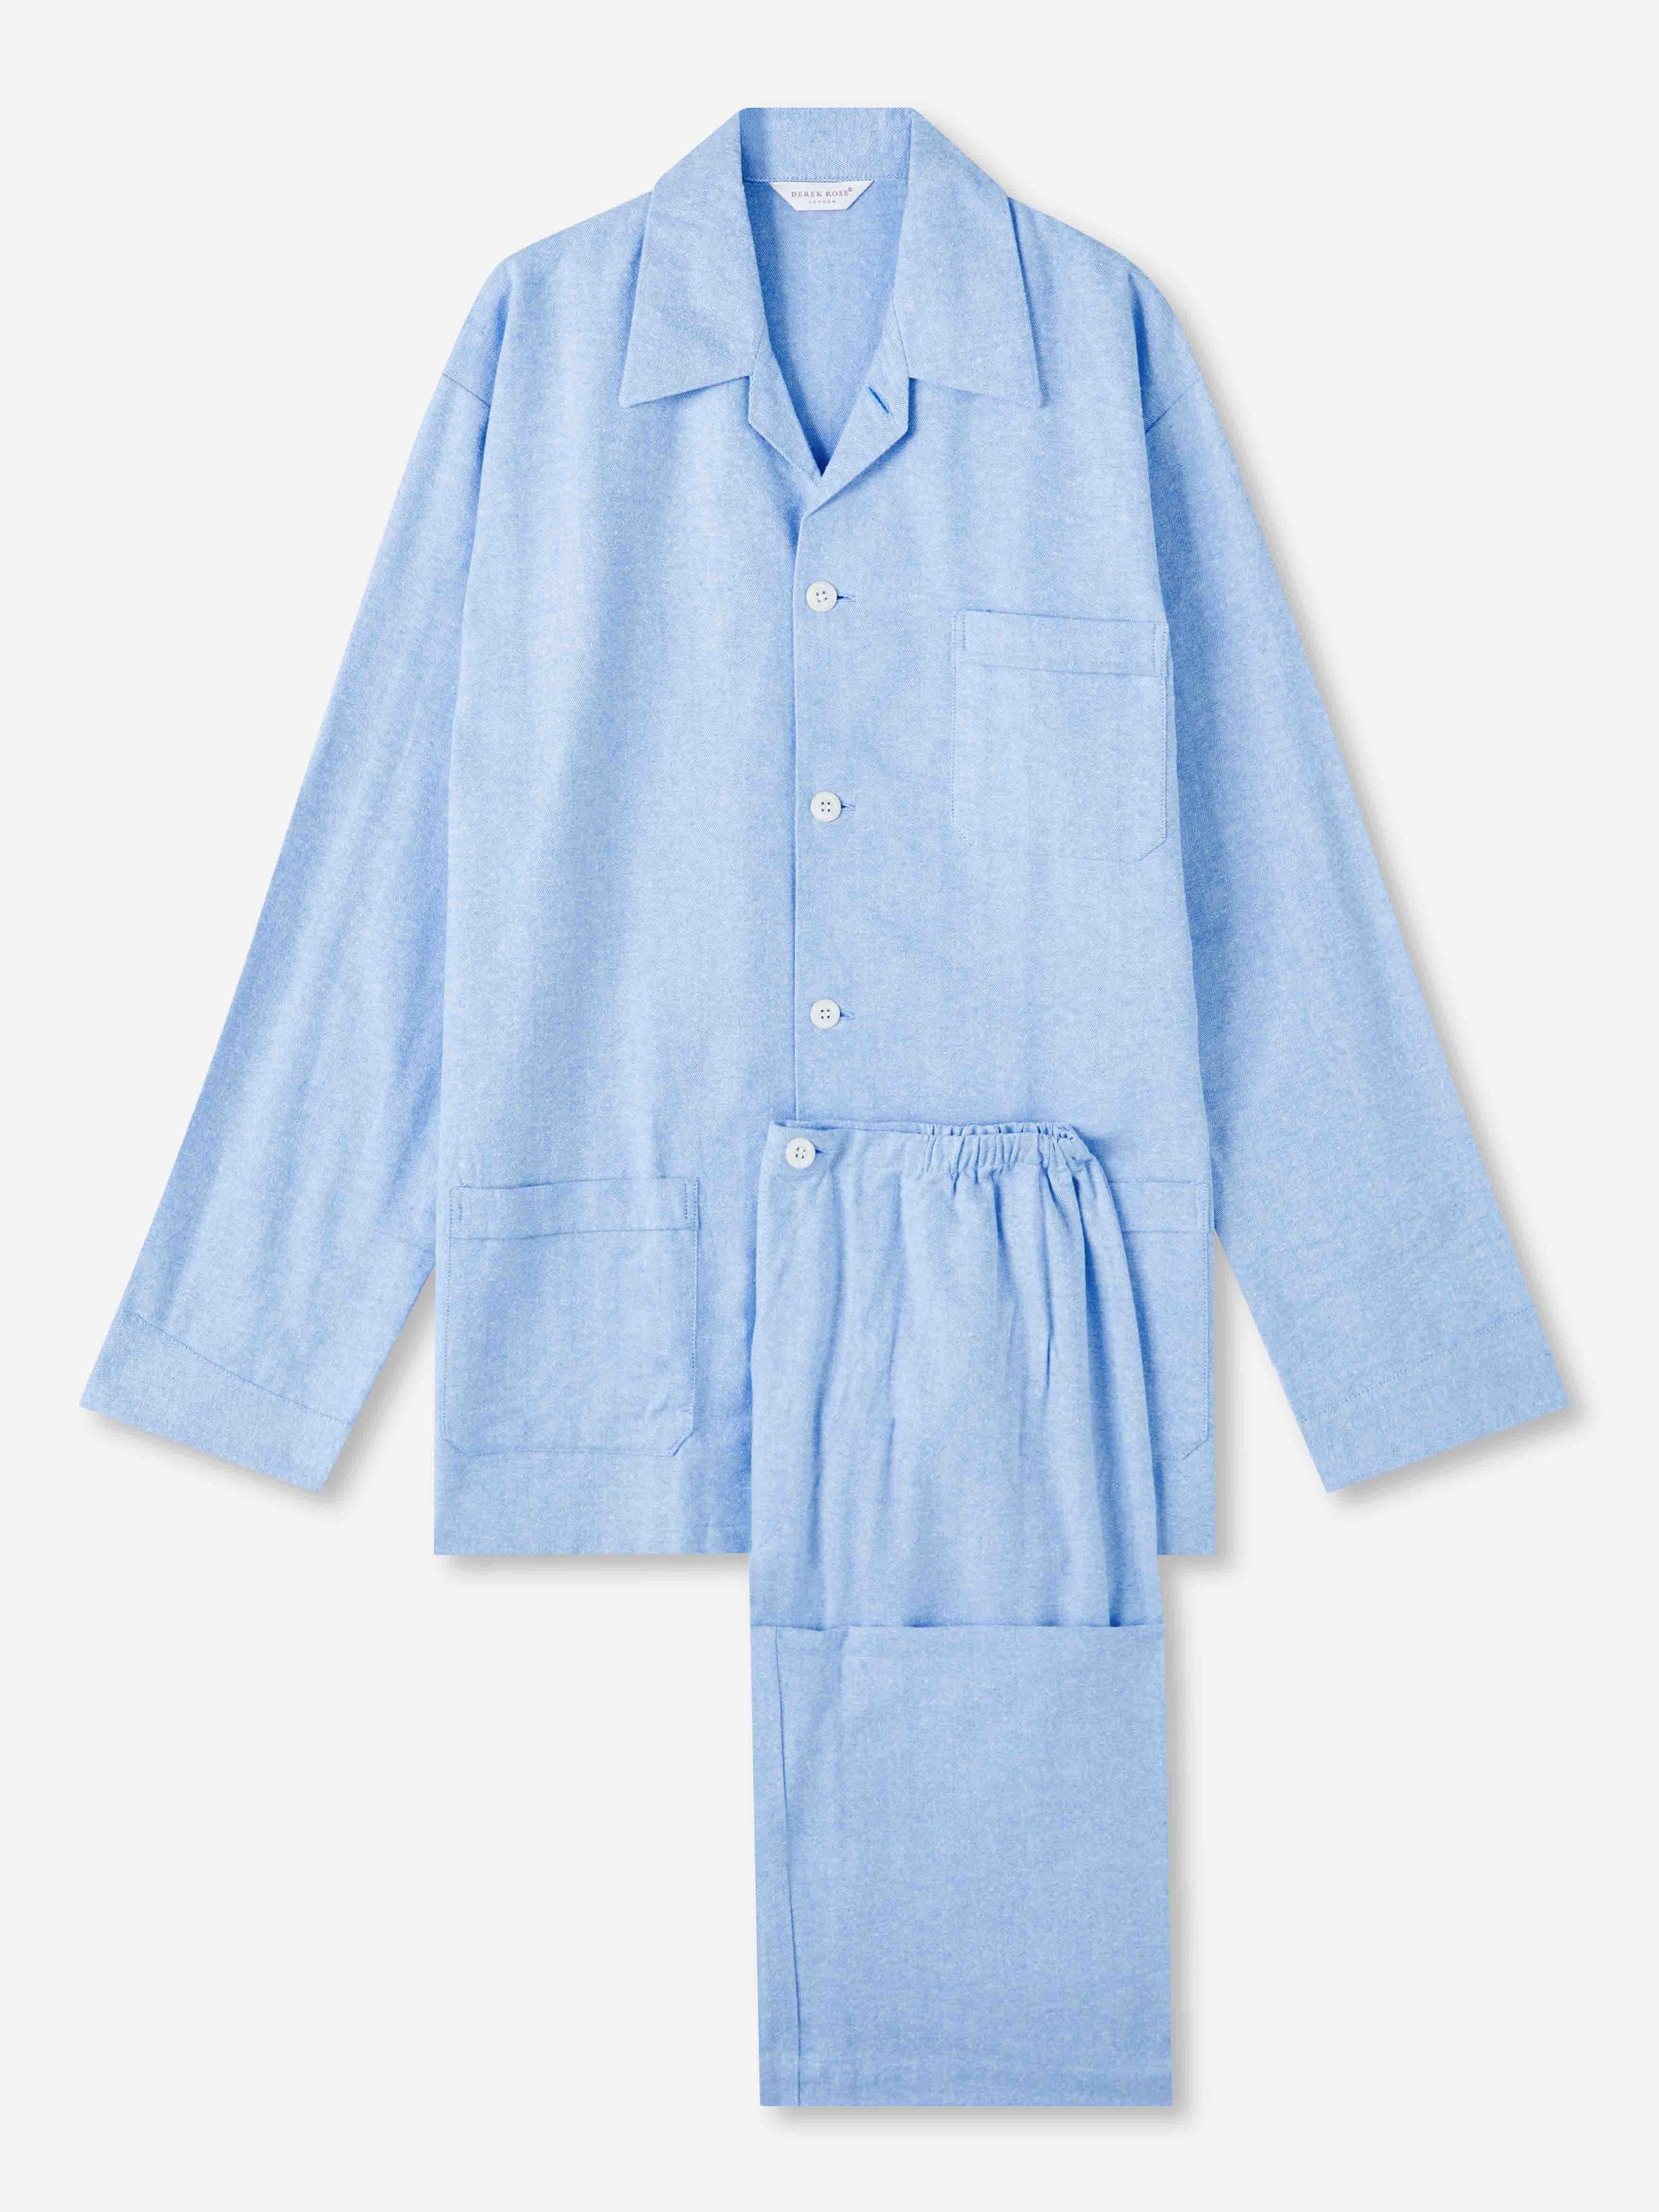 Men's Classic Fit Pyjamas Arran 24 Brushed Cotton Blue